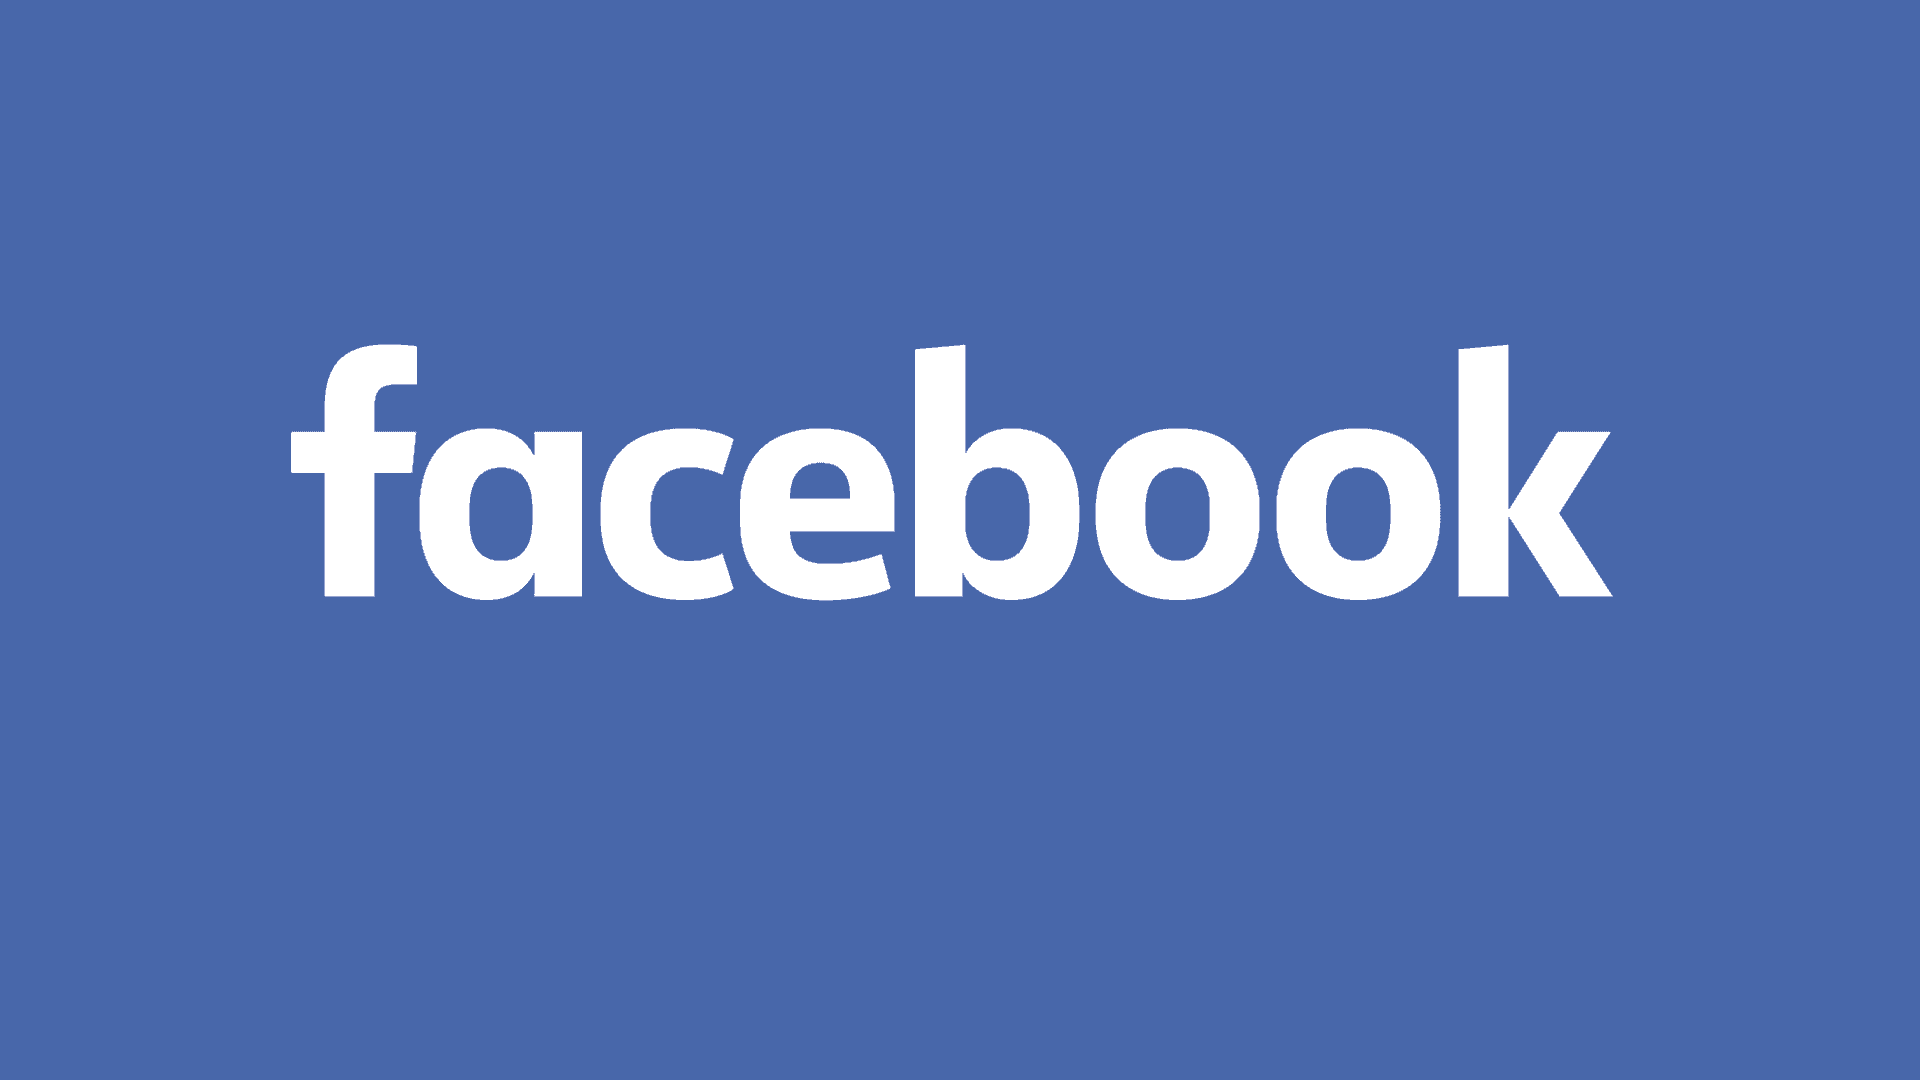 Facing up to Facebook